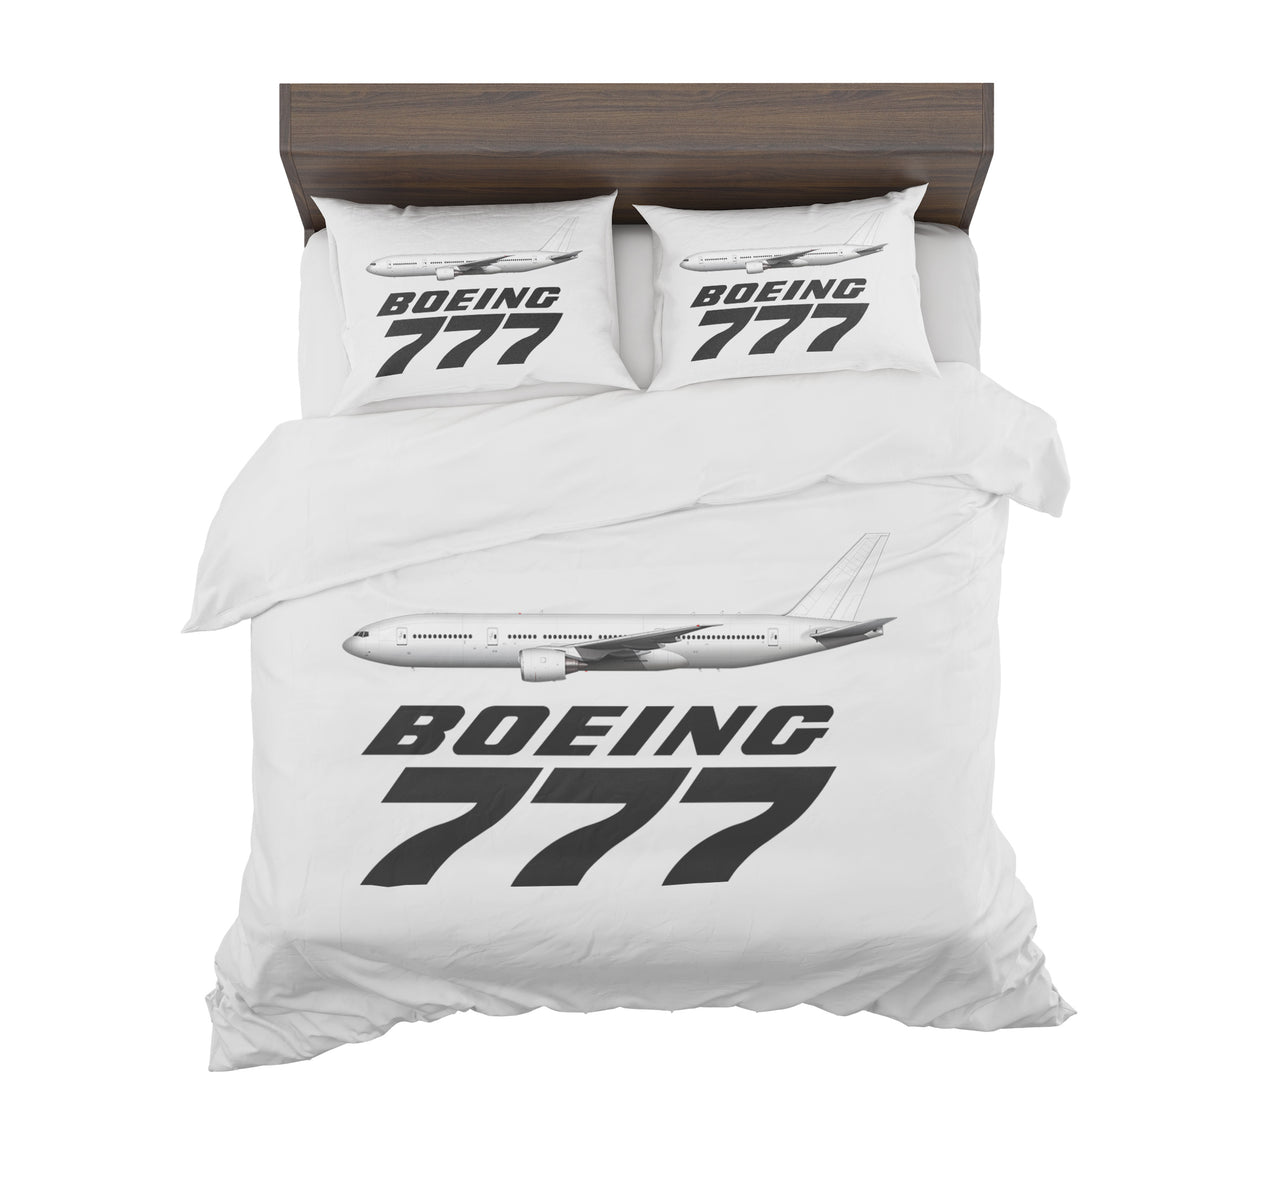 The Boeing 777 Designed Bedding Sets